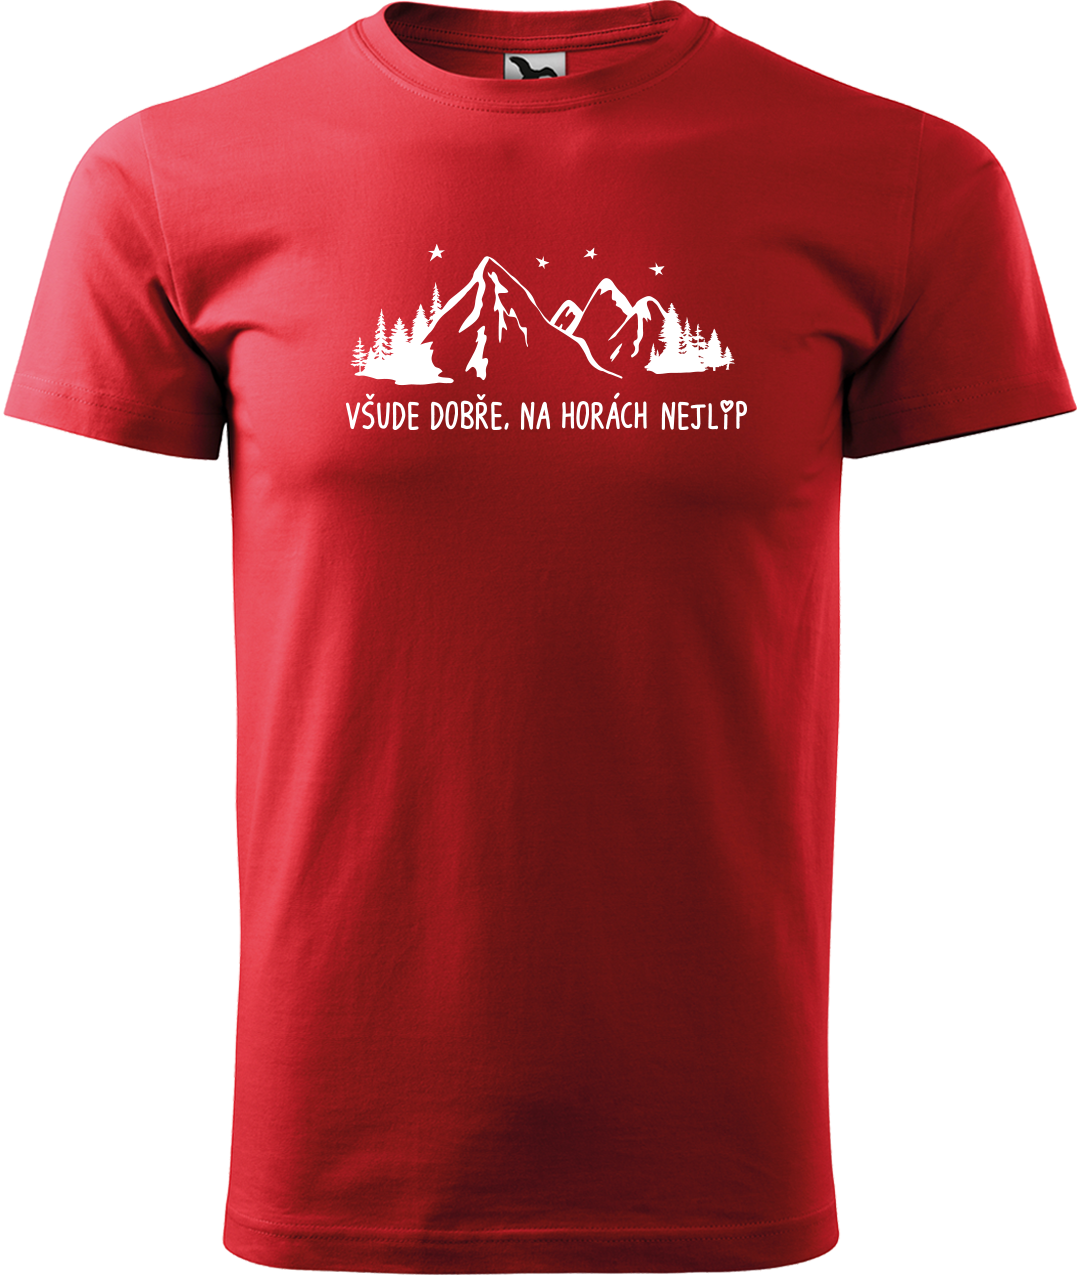 Pánské tričko na hory - Všude dobře, na horách nejlíp Velikost: 3XL, Barva: Červená (07)